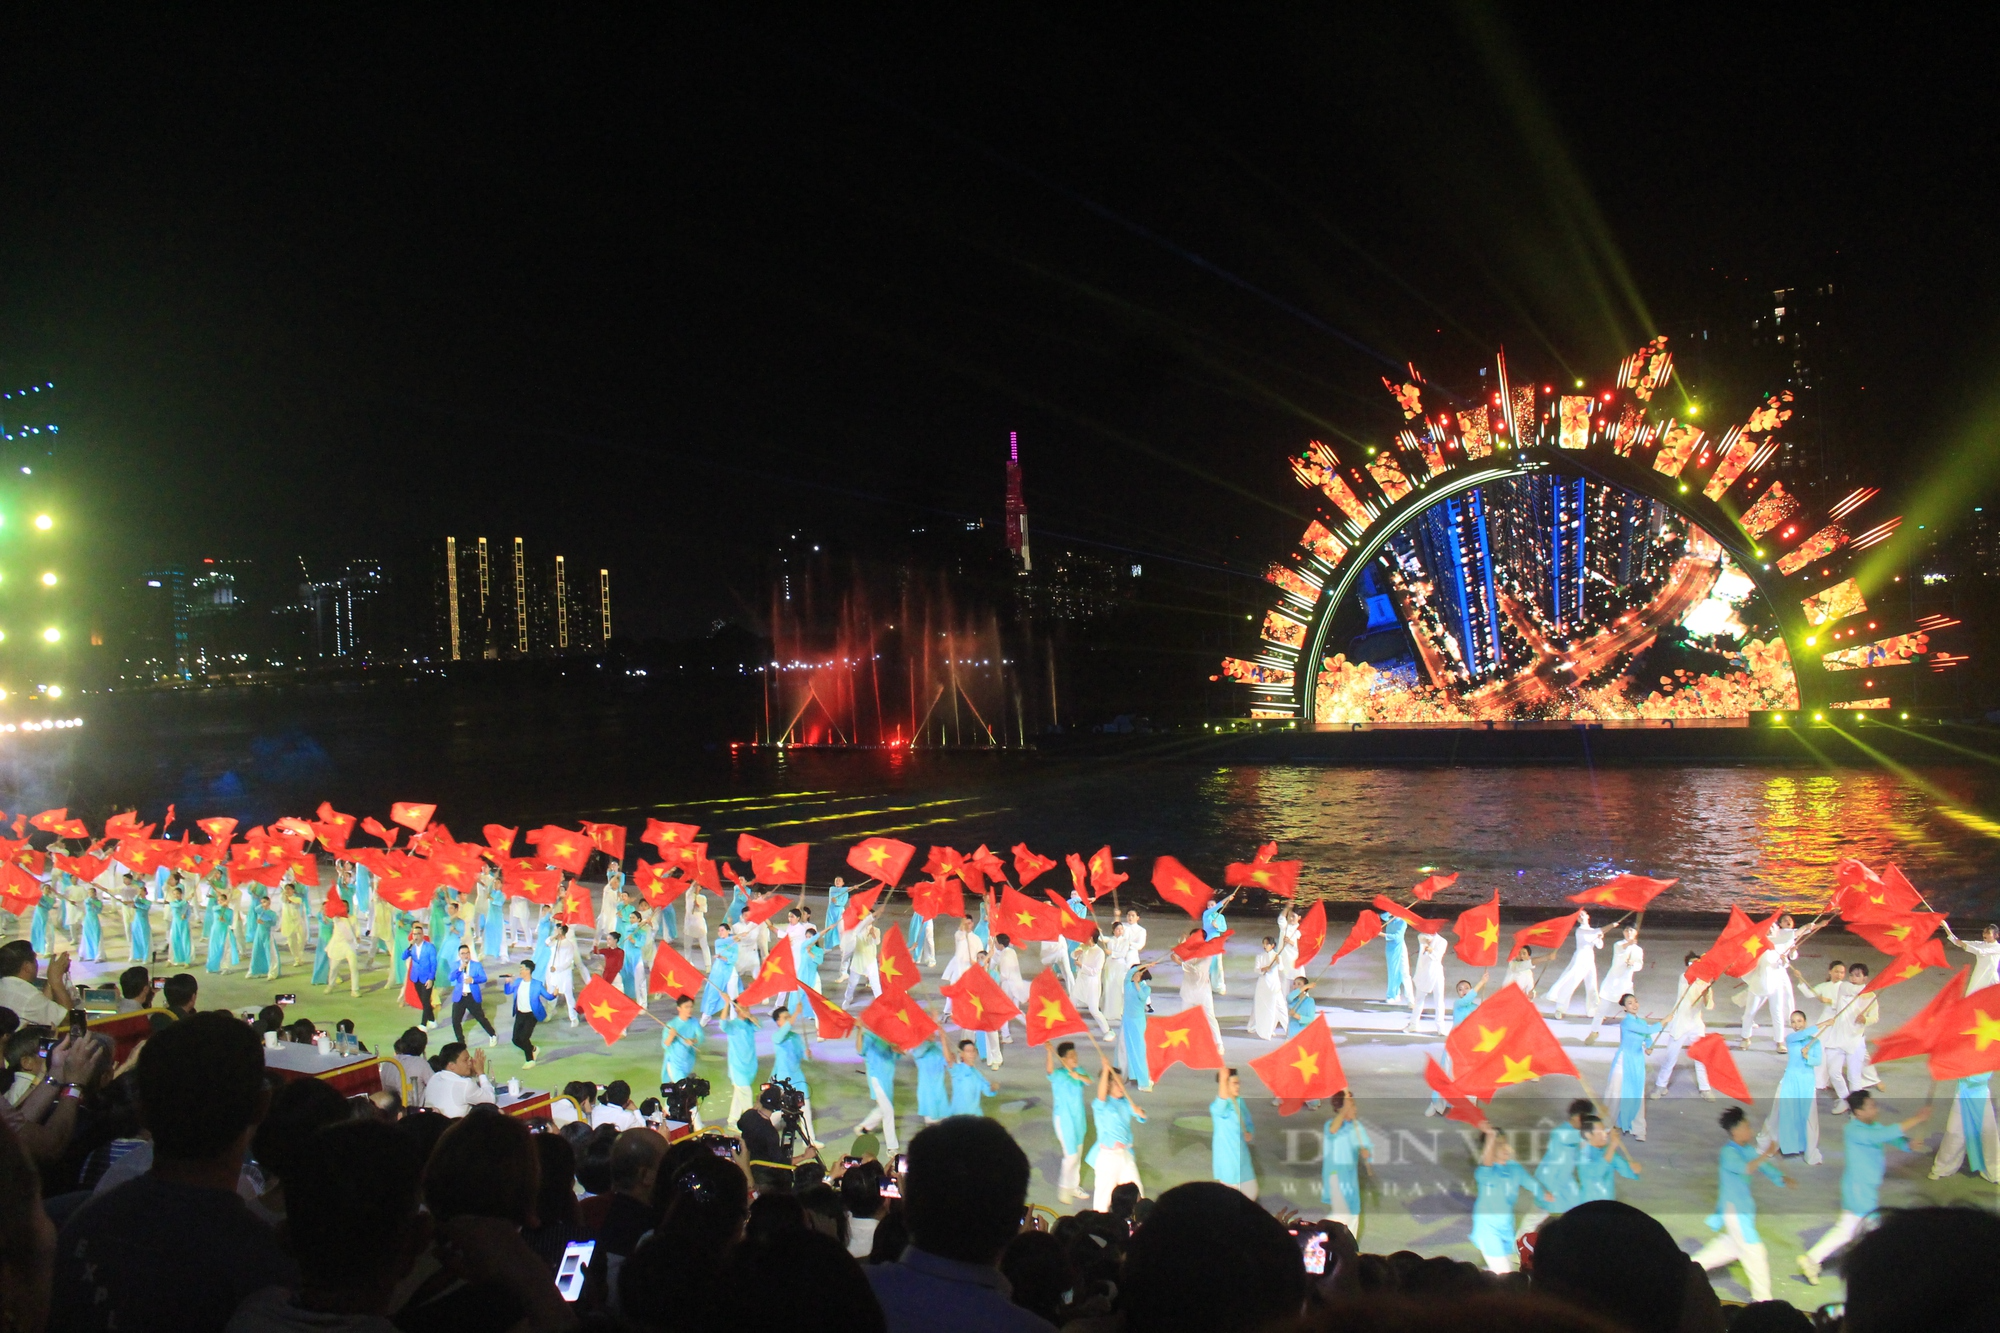 Mãn nhãn đêm nghệ thuật Dòng sông kể chuyện, 700 diễn viên biểu diễn trên sông Sài Gòn - Ảnh 11.